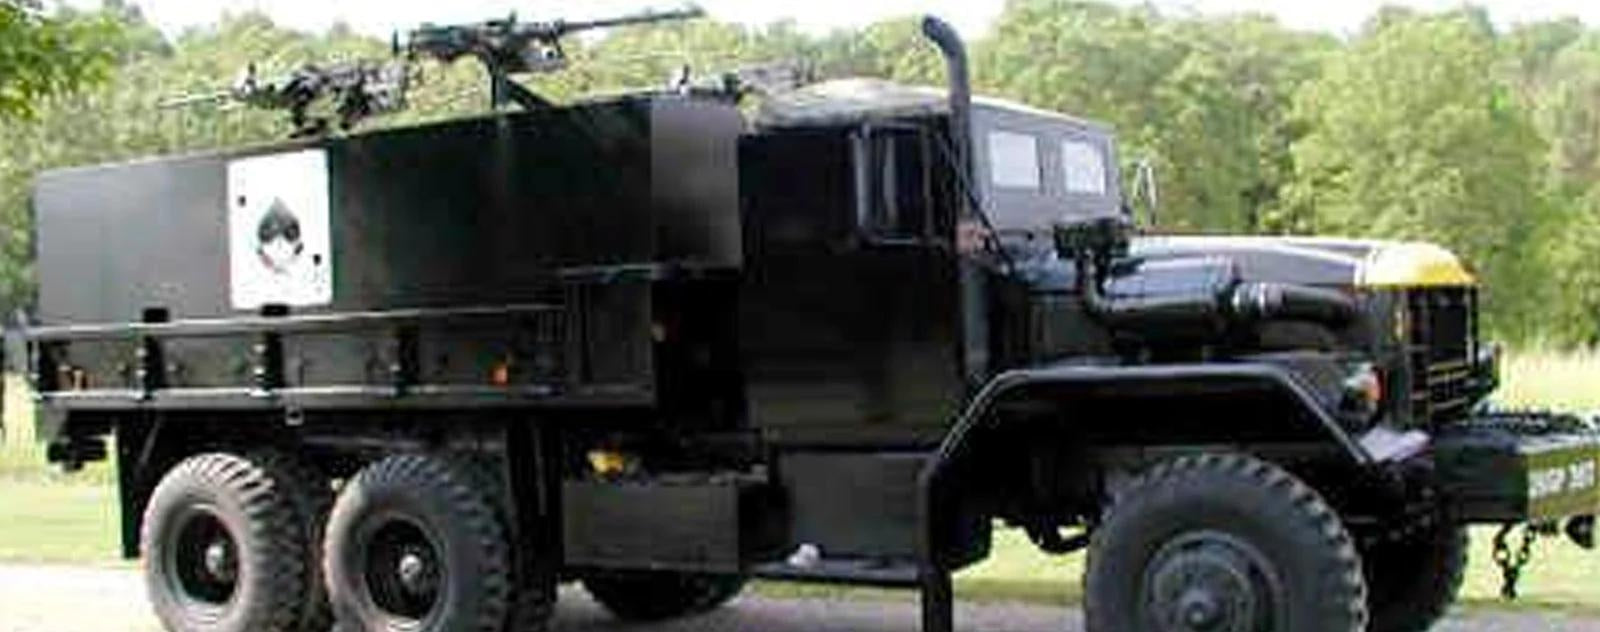 Camión Militar con una Carta de As de Picas